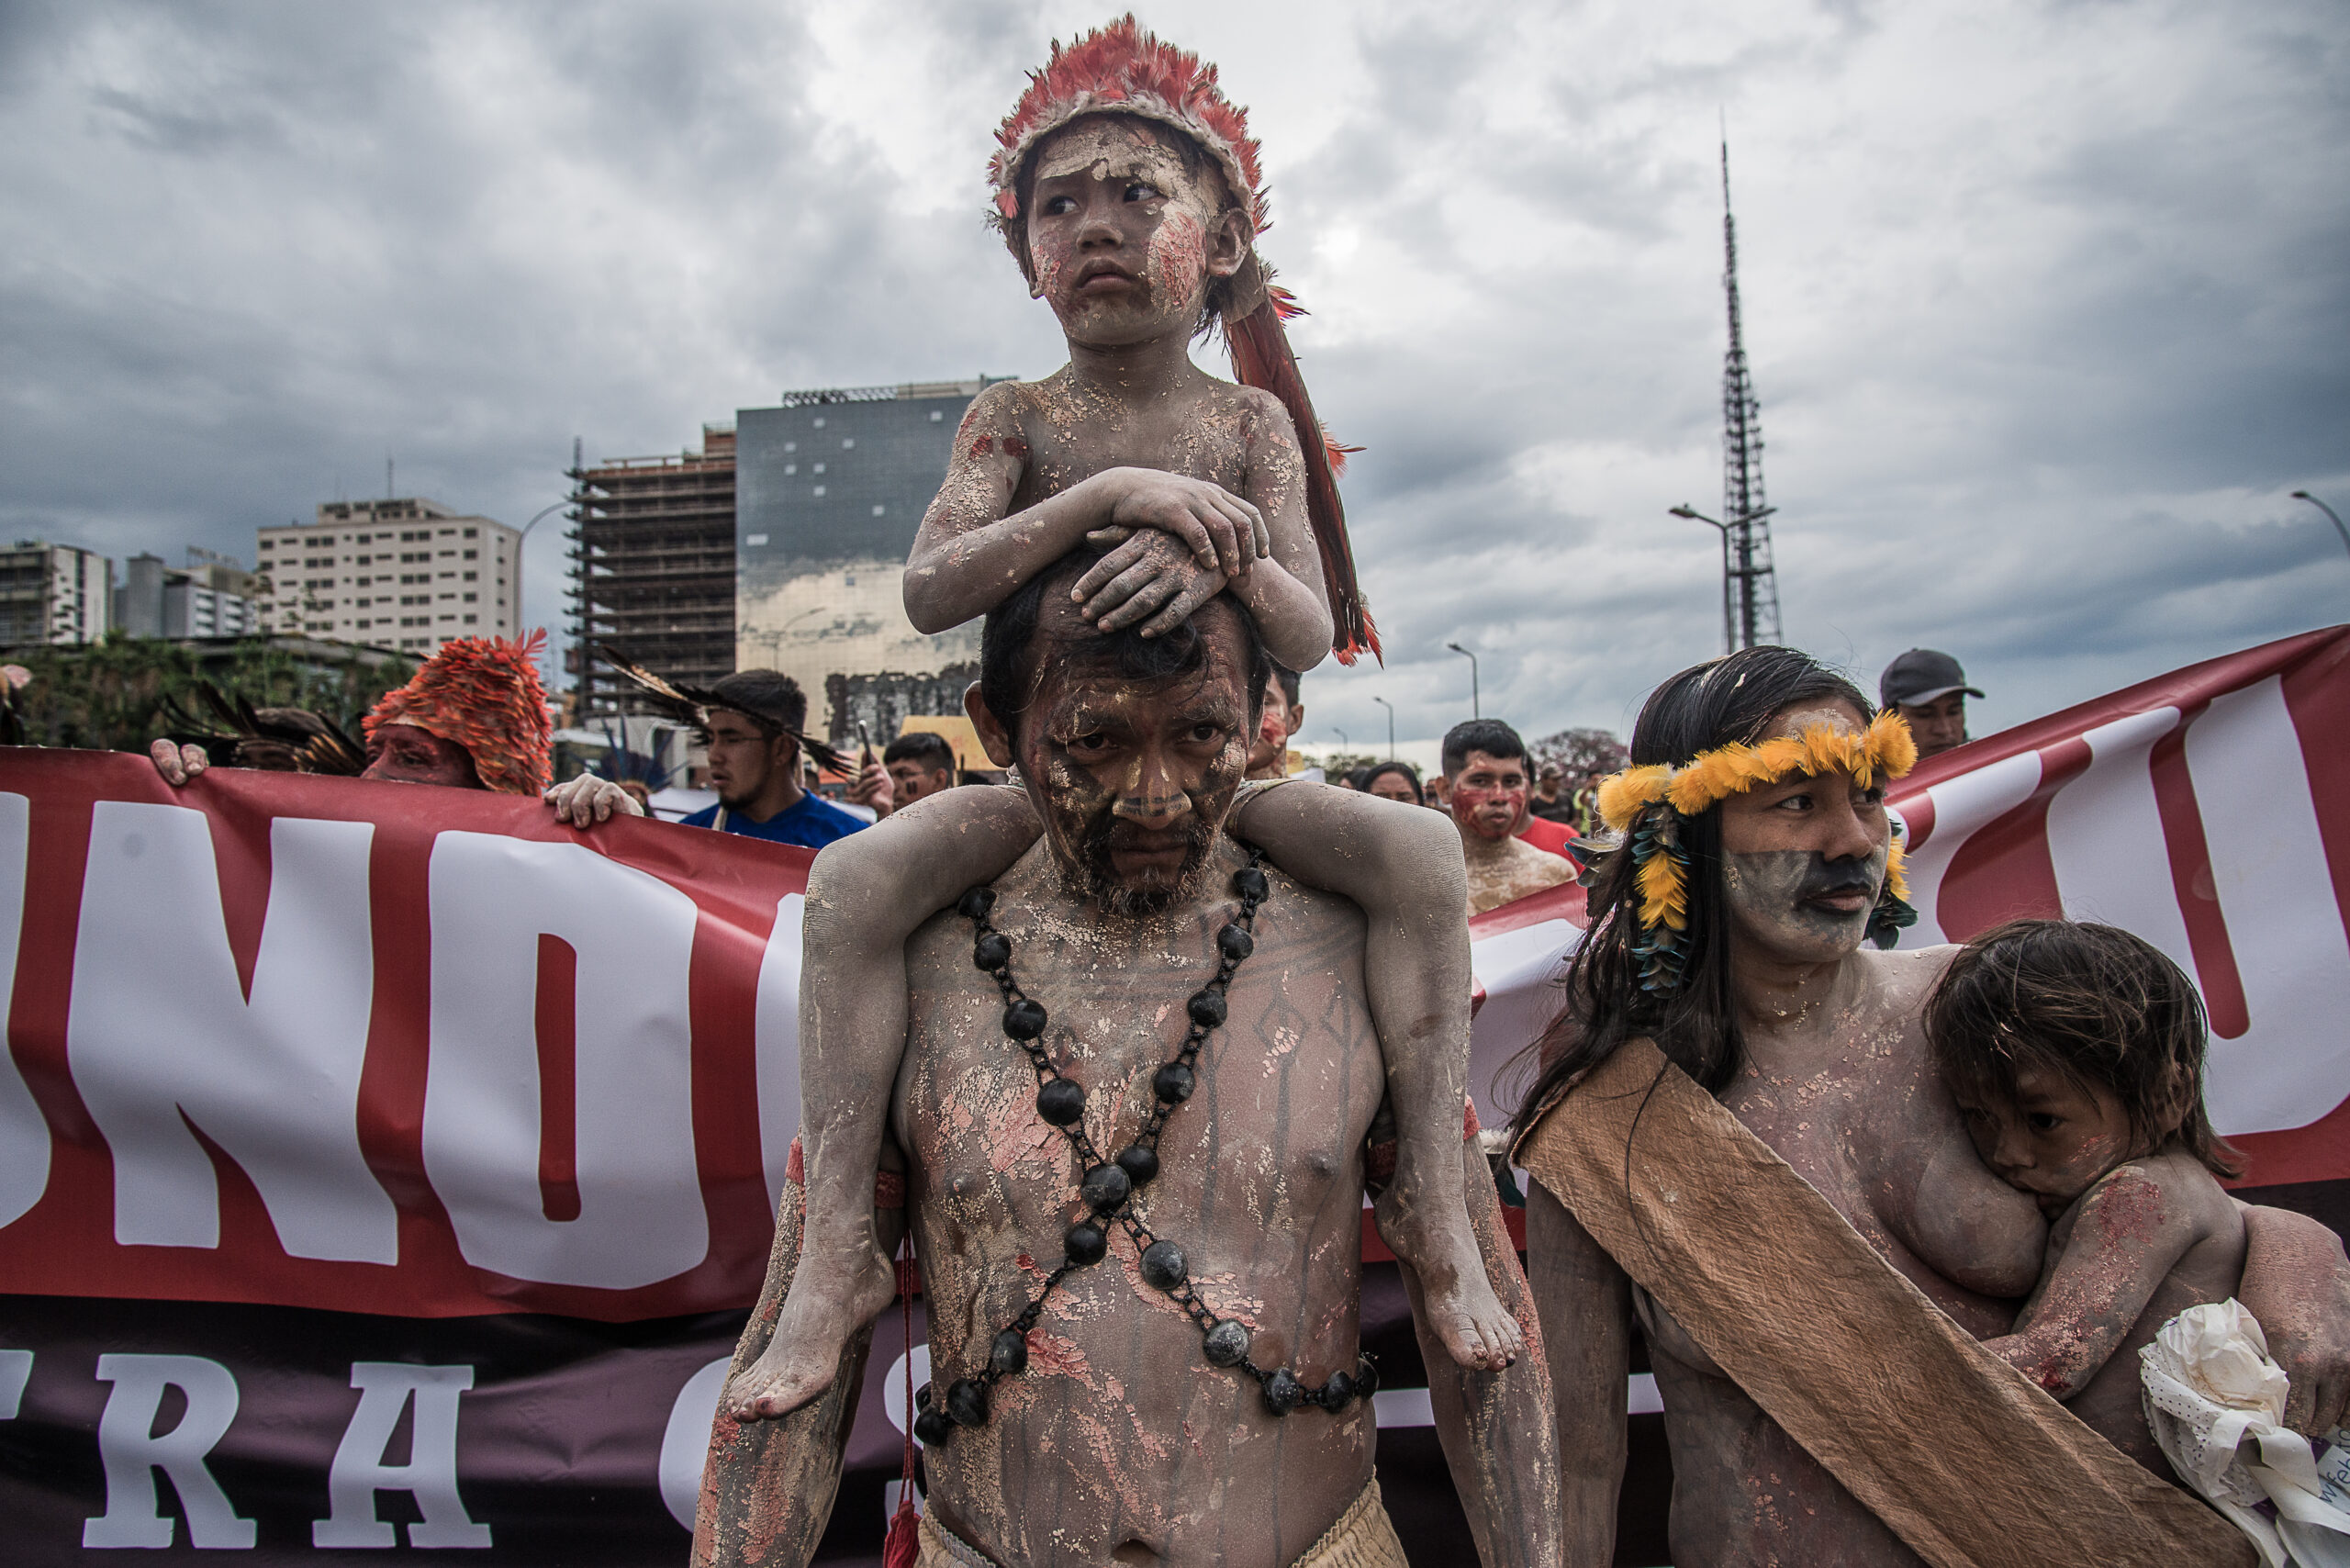 Criança indígena sobre os ombros de um homem adulto em protesto em Brasília. Ambos estão pintados de terra e urucum. Do lado direito, um bebê mama no peito da mãe.